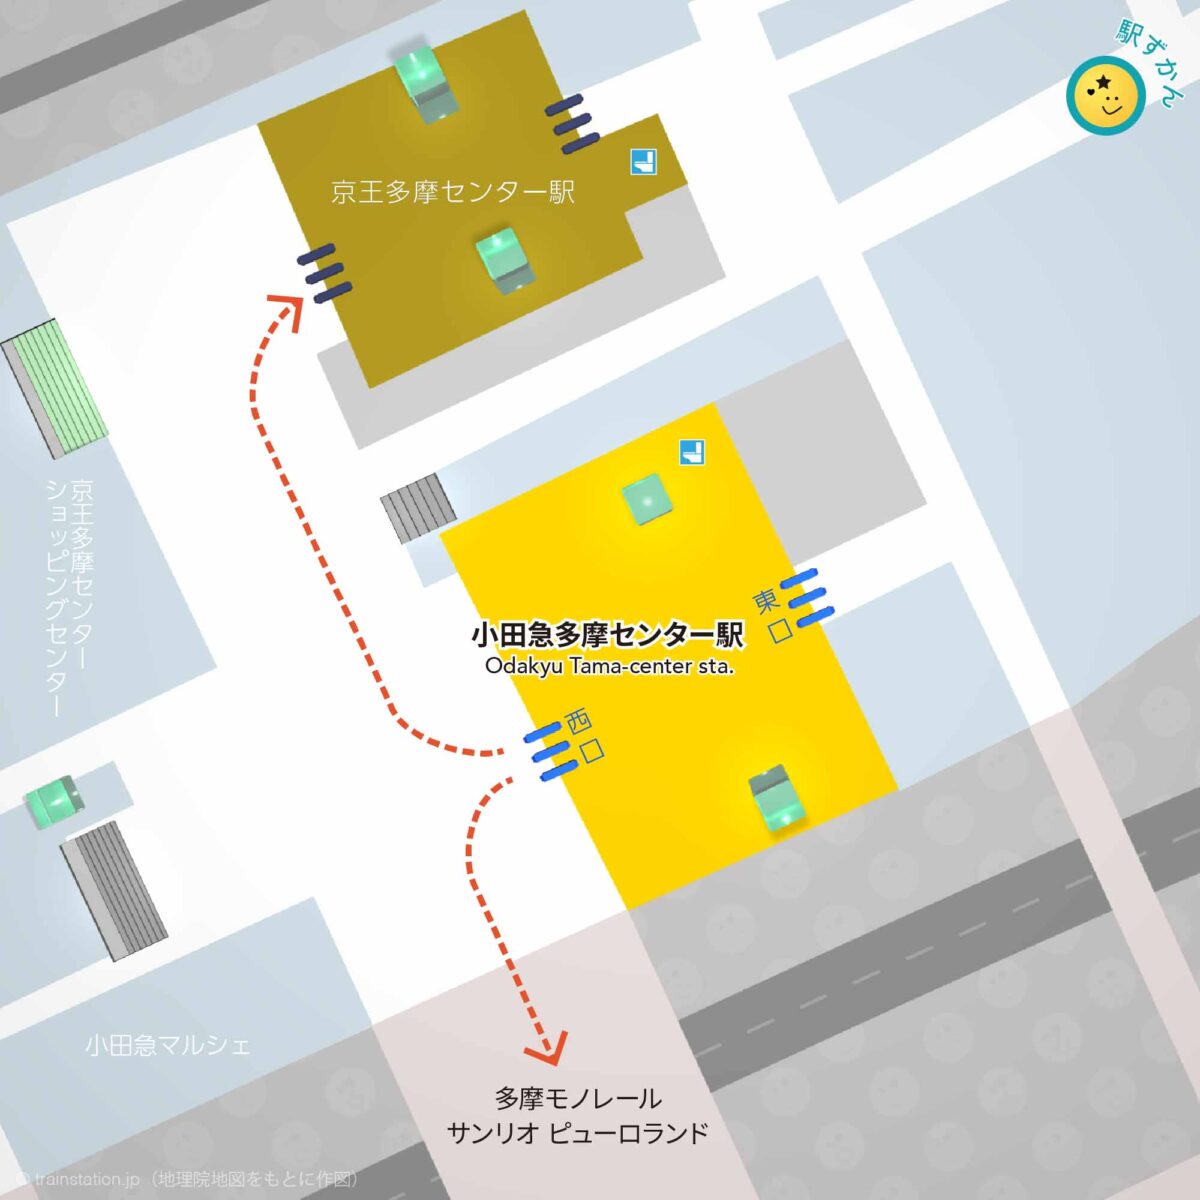 小田急多摩センター駅構内図と周辺マップ